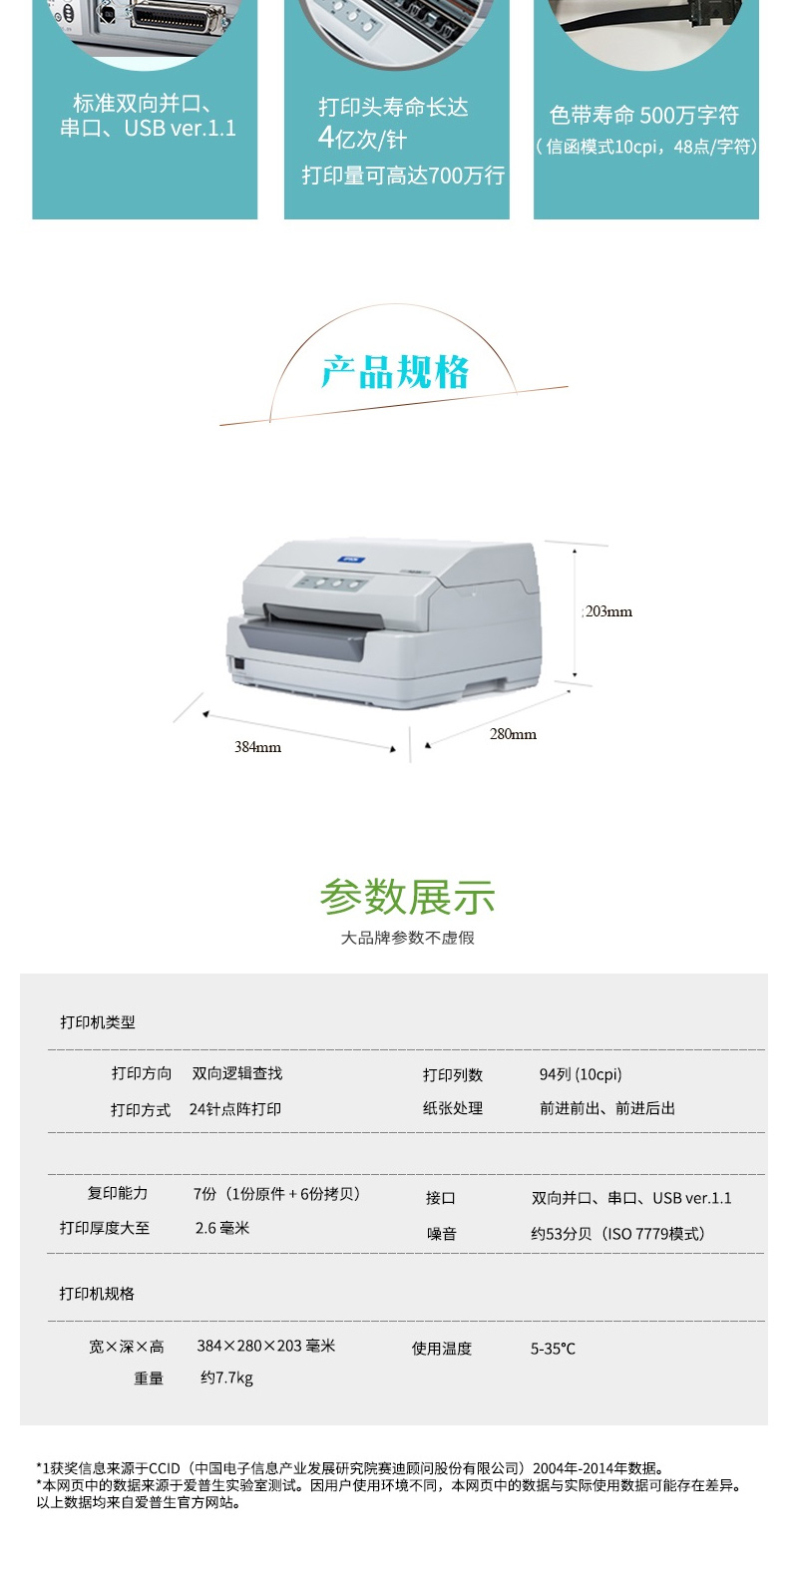 爱普生 EPSON 94列存折证卡针式打印机 PLQ-20K  (24针 最大打印厚度：2.6mm)(标配不带数据线)